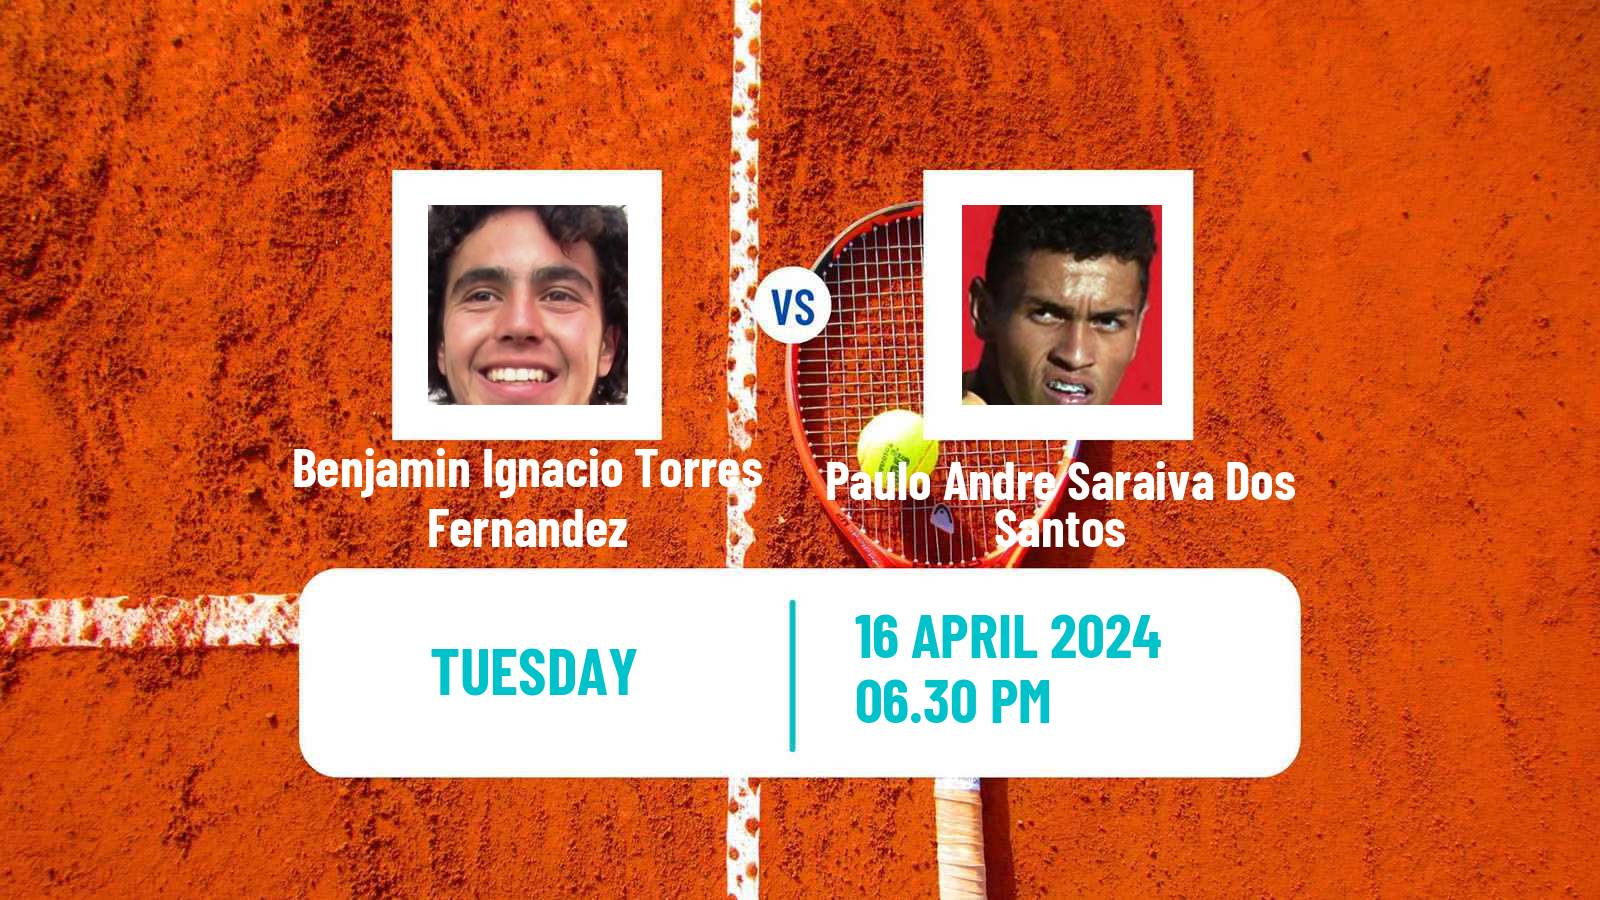 Tennis ITF M15 Santiago Men Benjamin Ignacio Torres Fernandez - Paulo Andre Saraiva Dos Santos